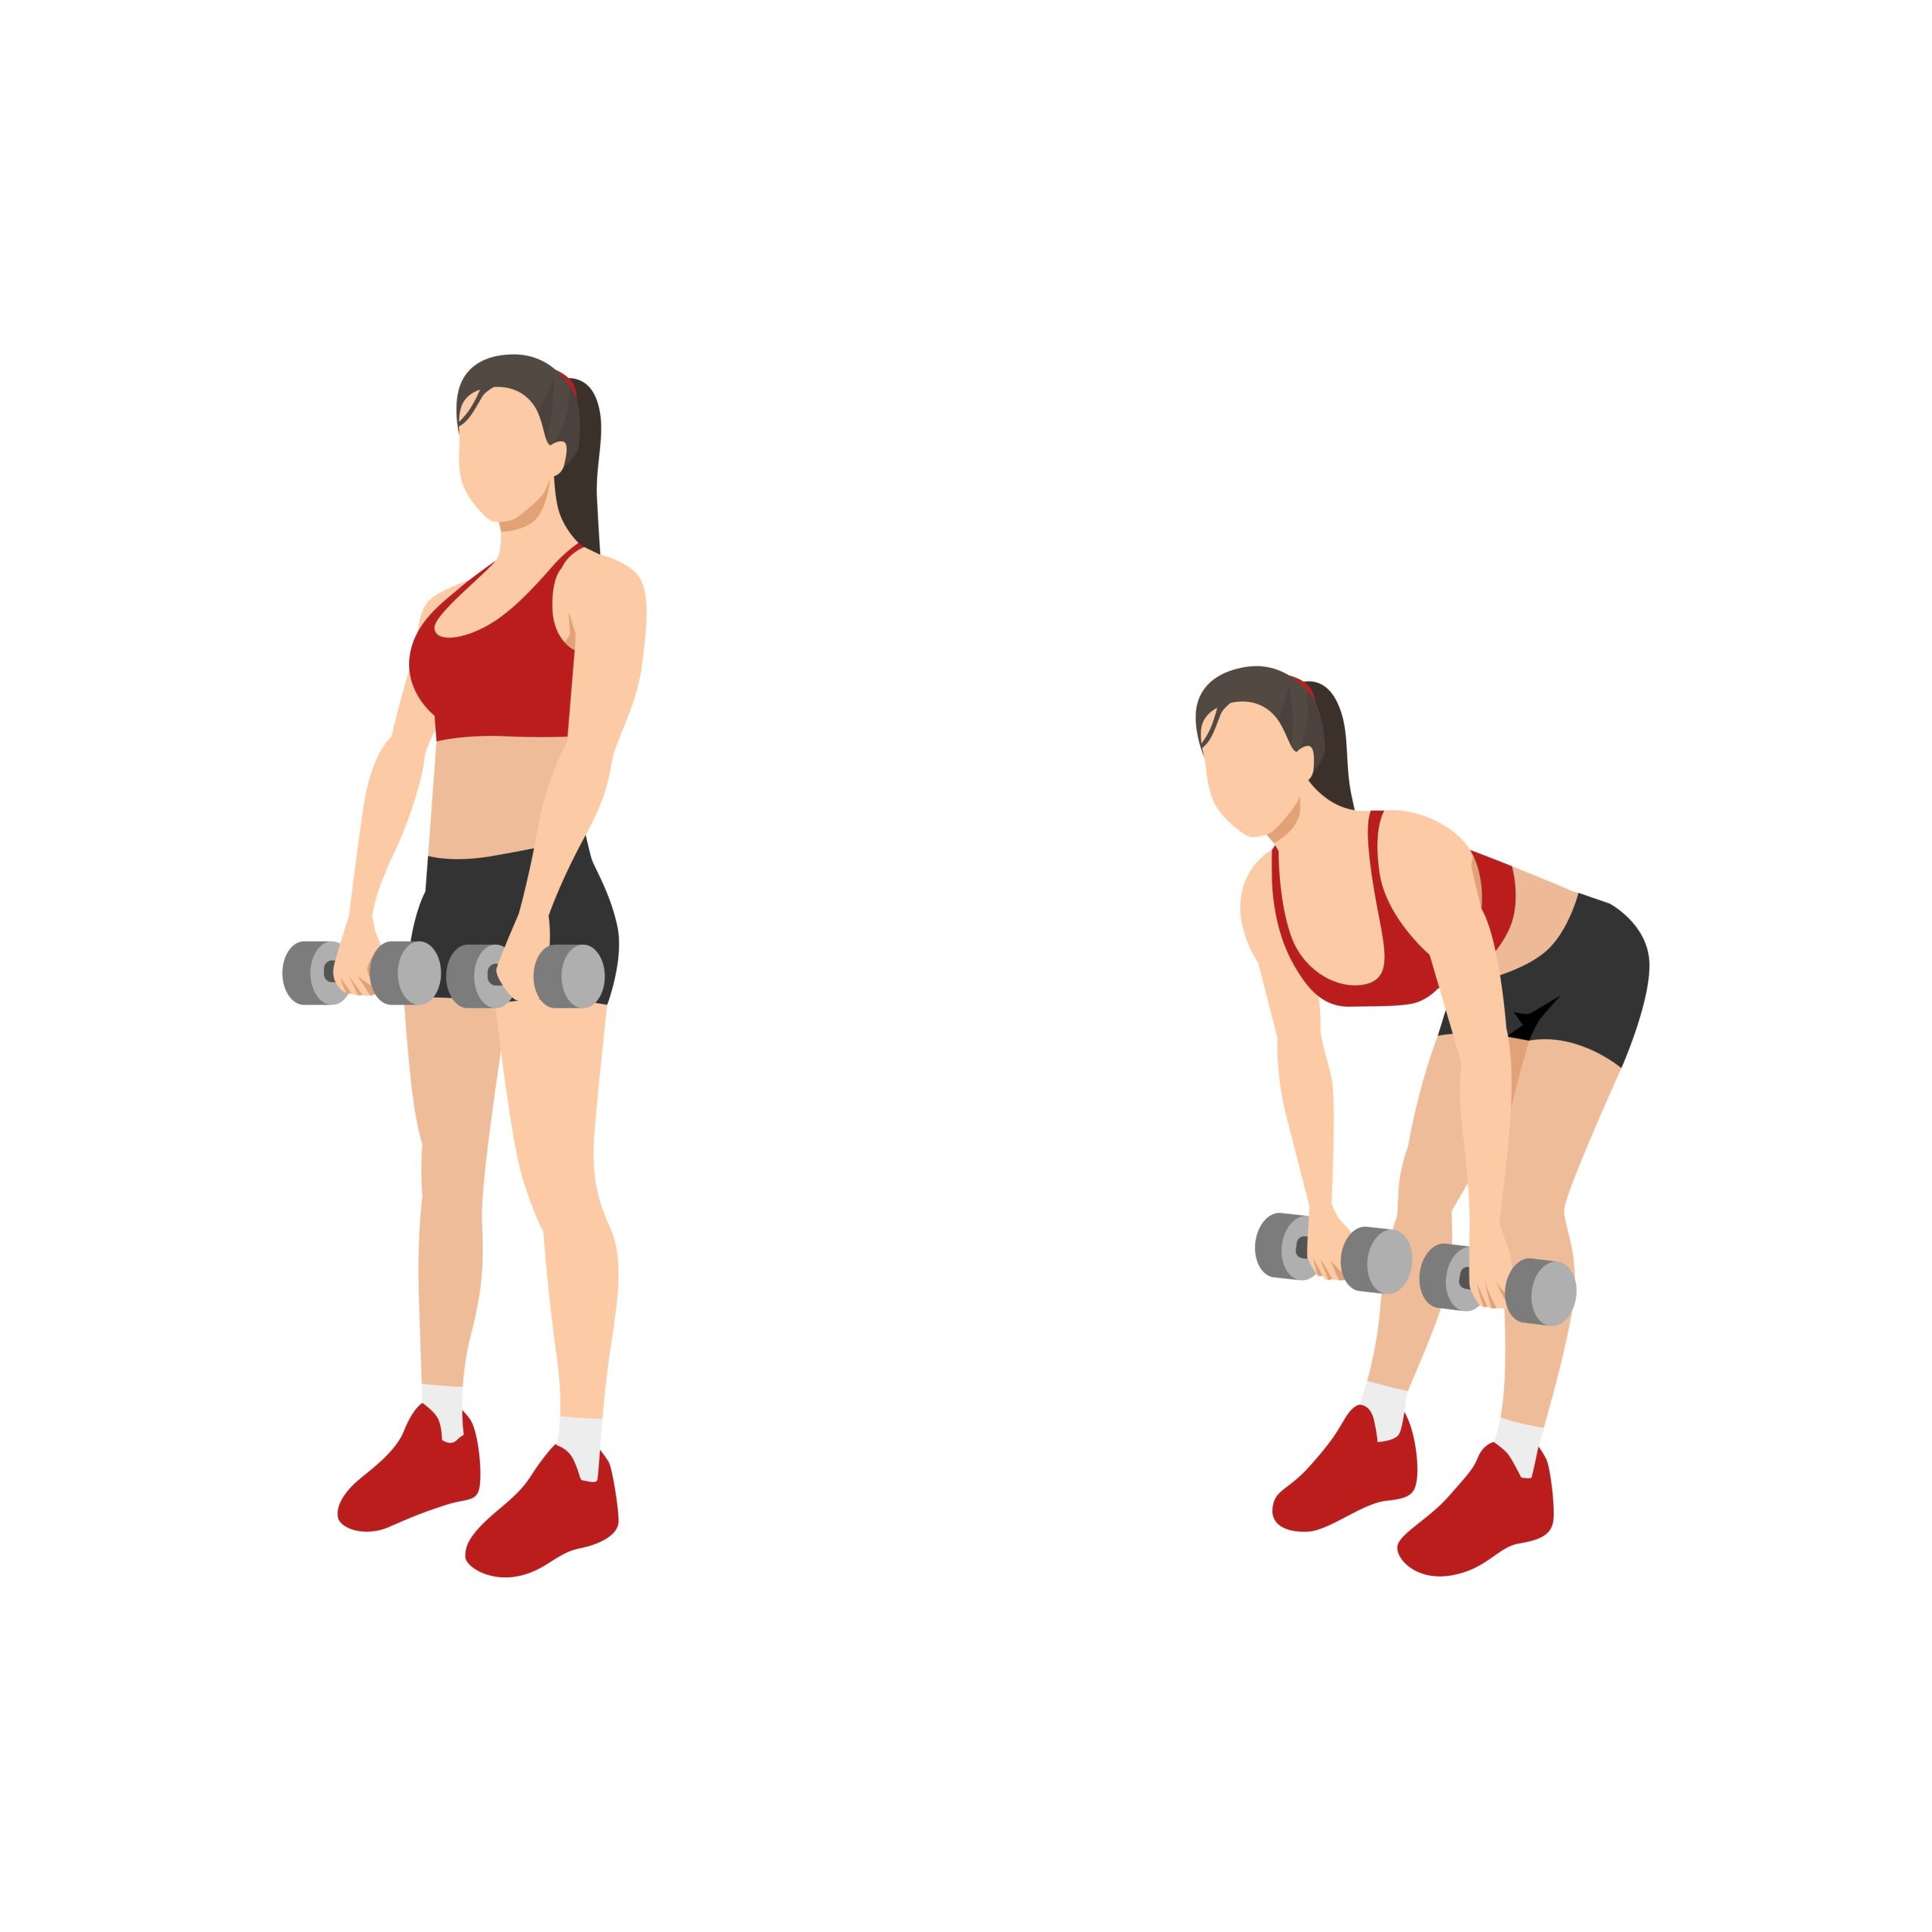 7 Best Dumbbell Exercises for Women (FULL BODY WORKOUT) 